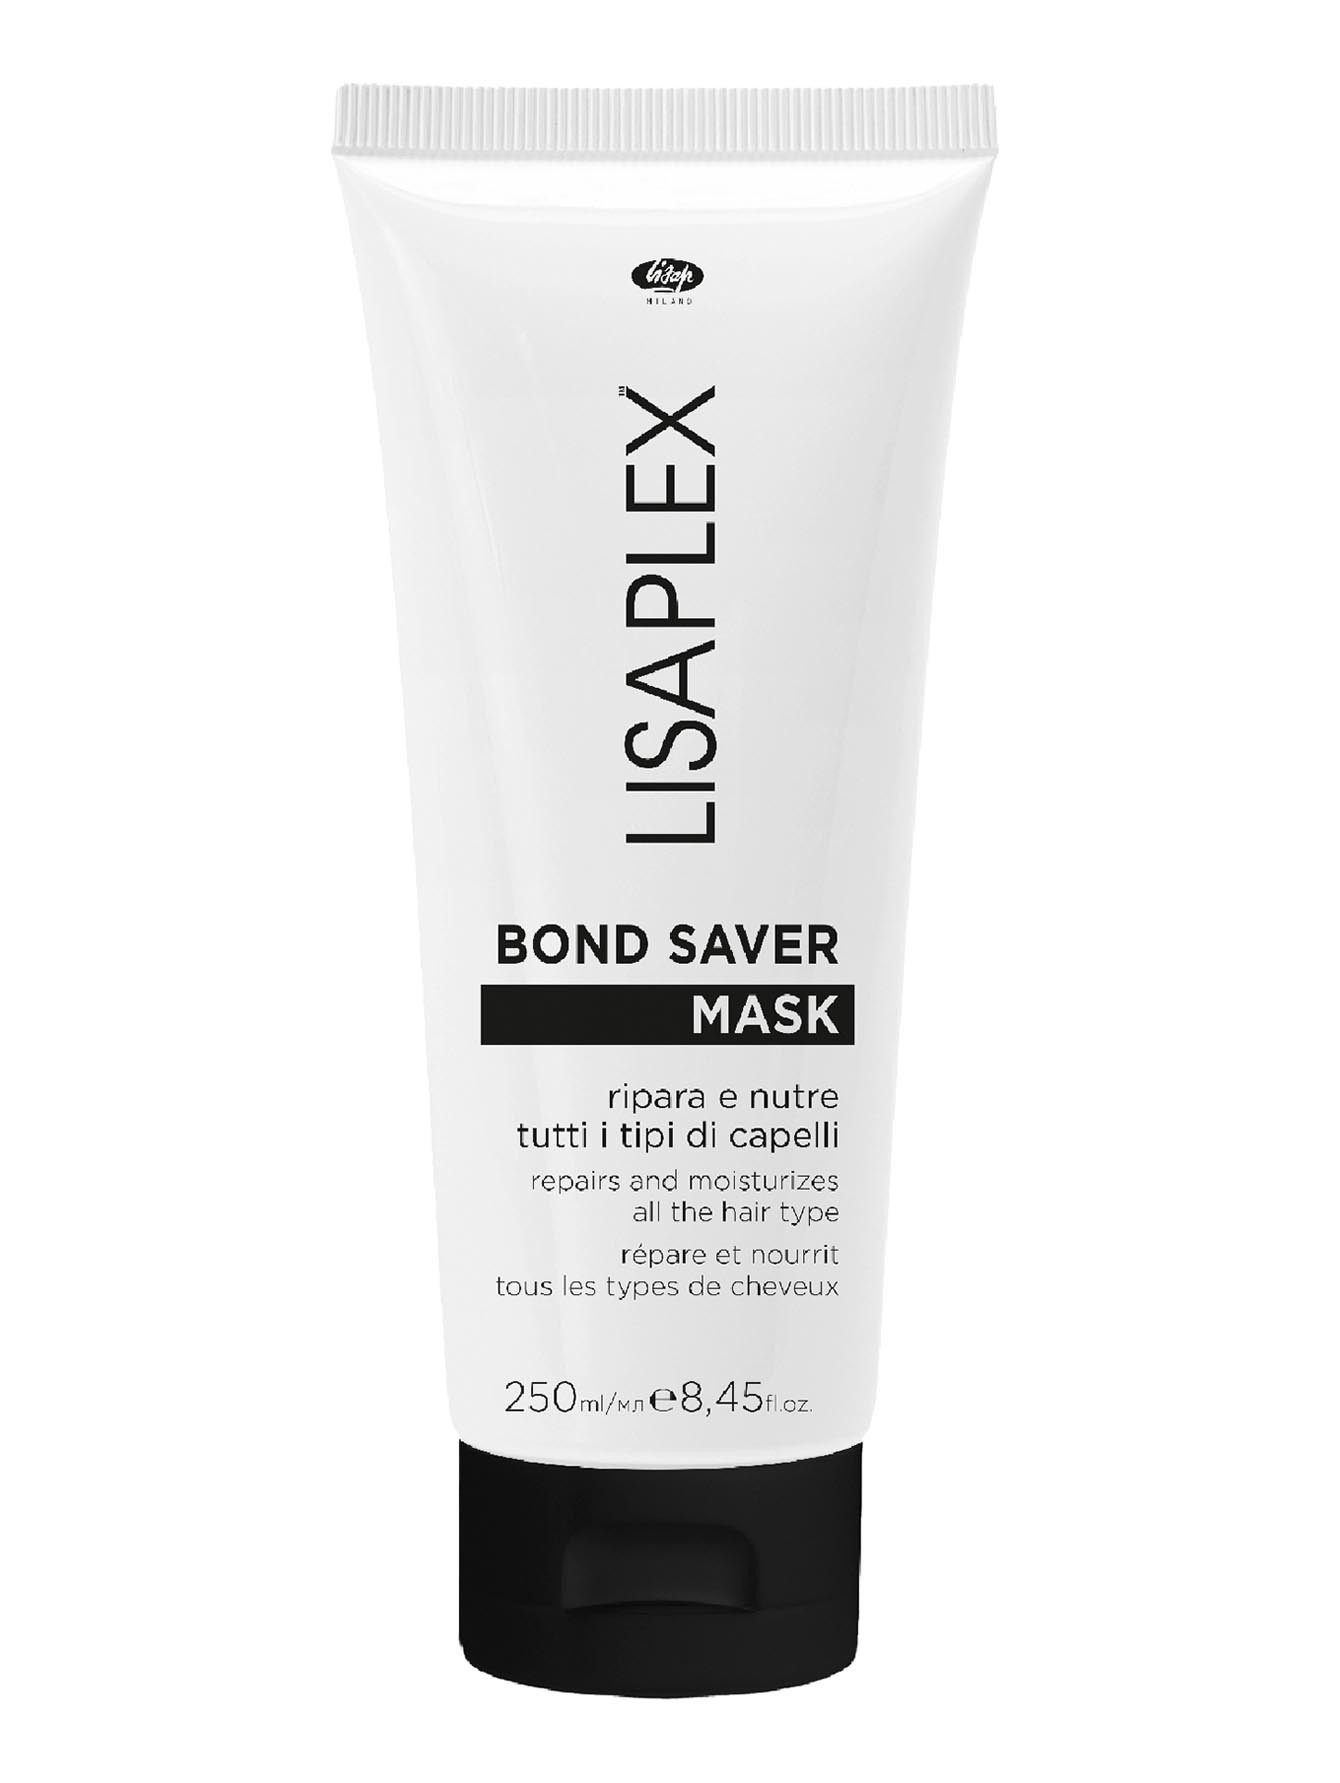 Увлажняющая и питательная маска для волос Lisaplex Bond Saver, 250 мл - Общий вид